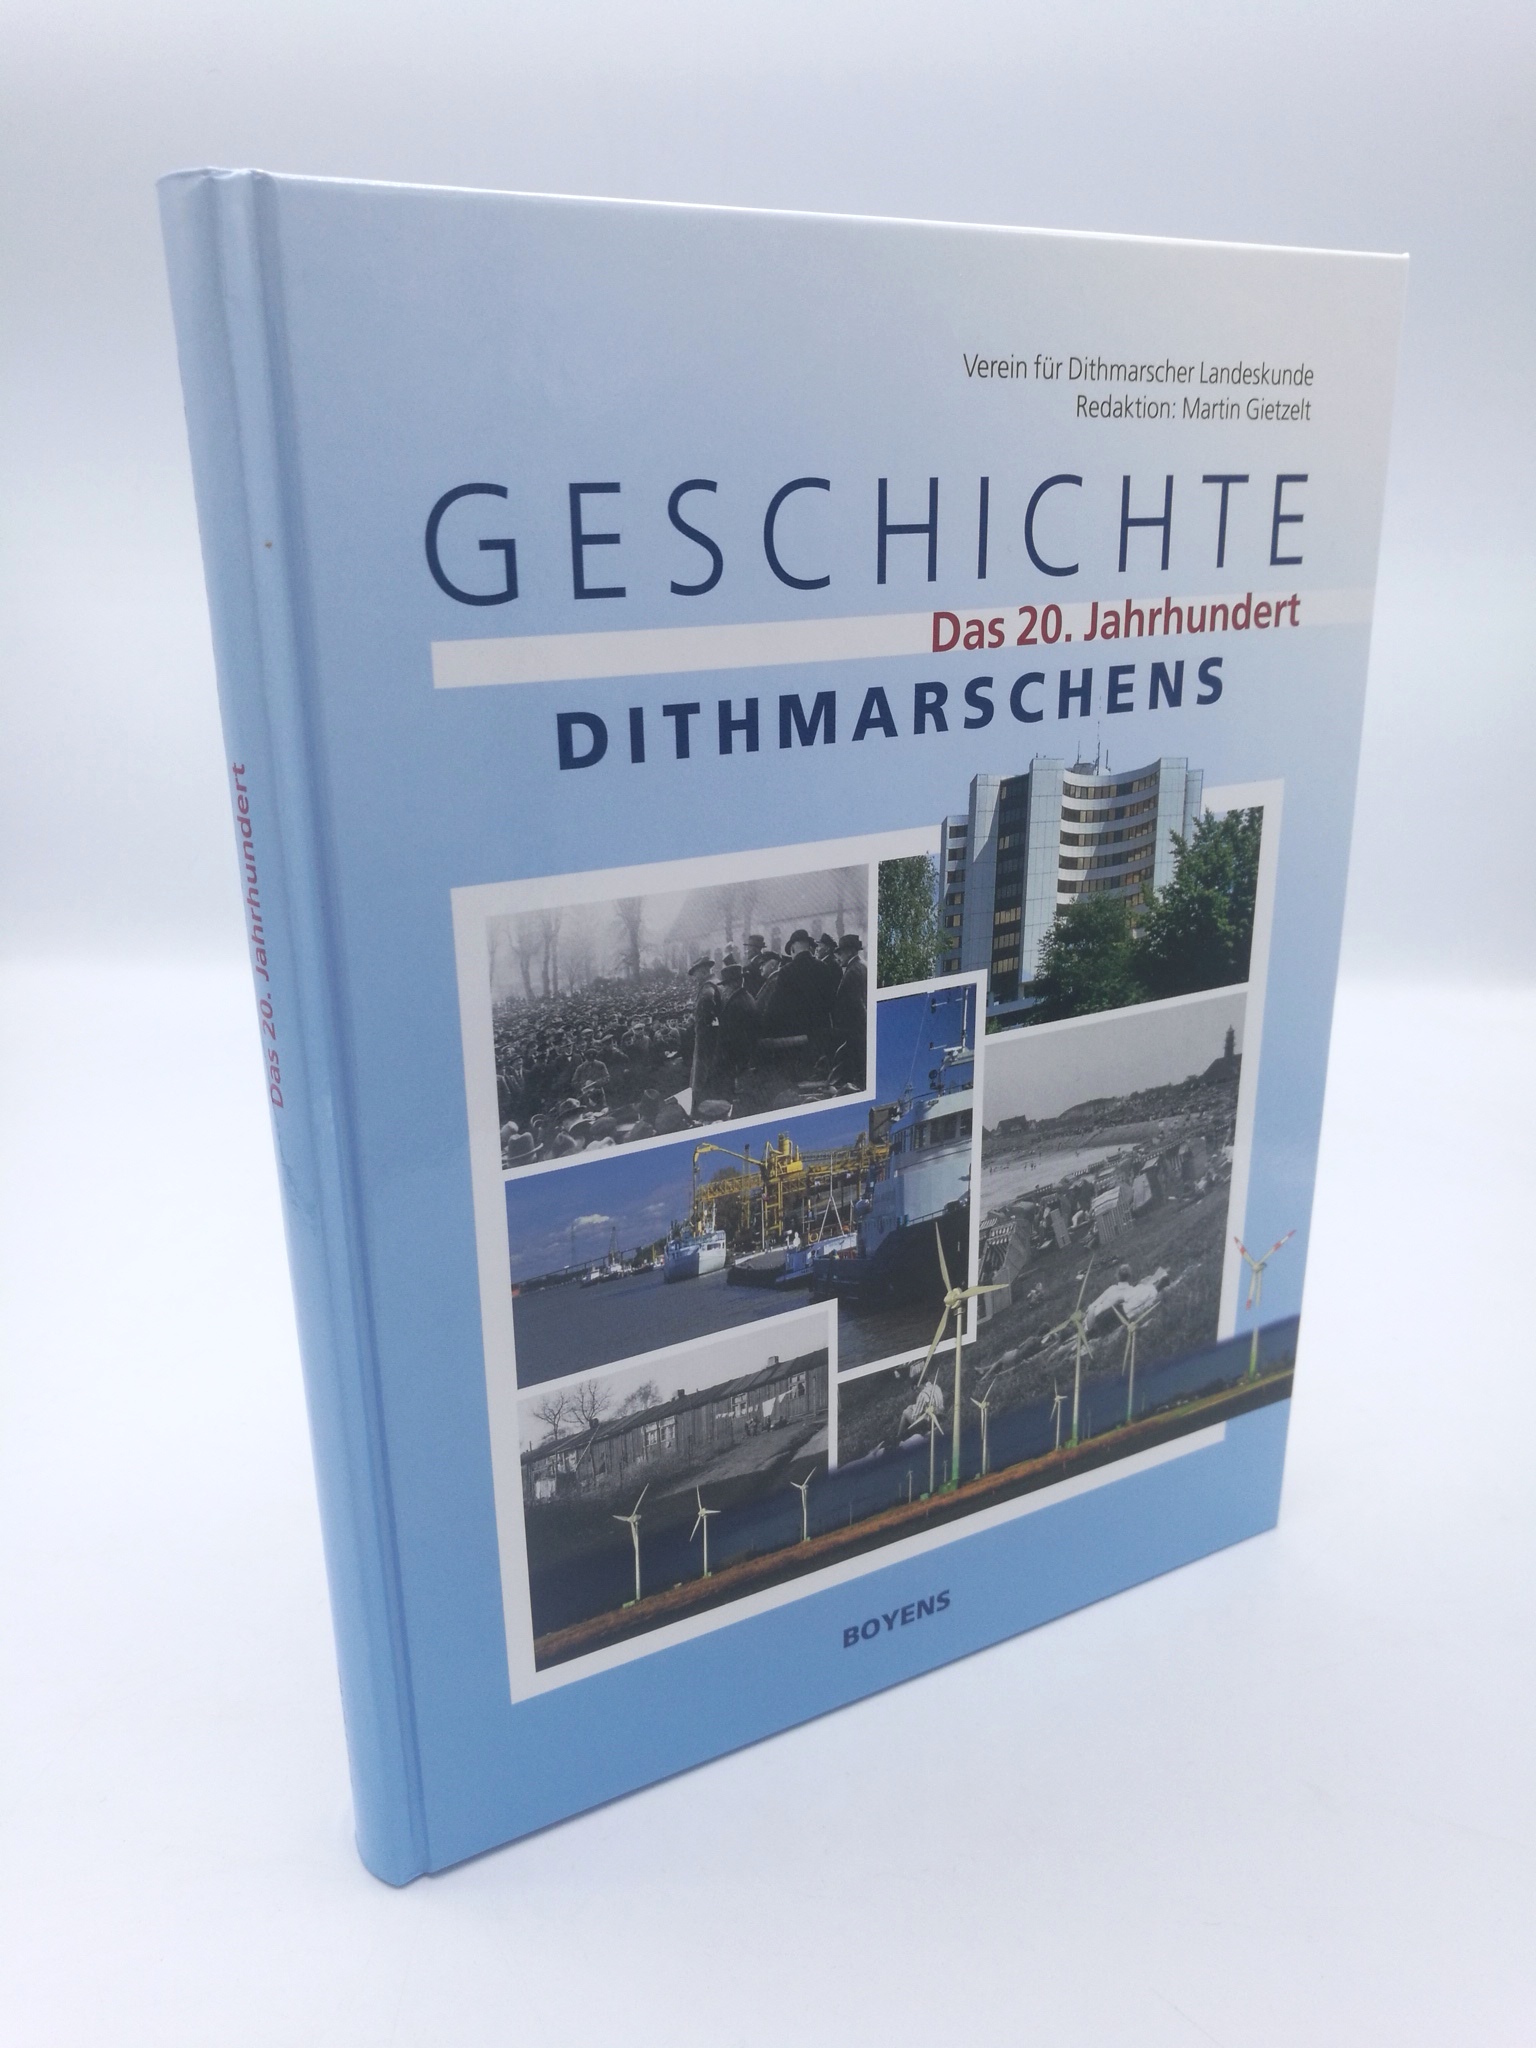 Geschichte Dithmarschens Das 20. Jahrhundert - Verein für Dithmarscher Landeskunde e.V.